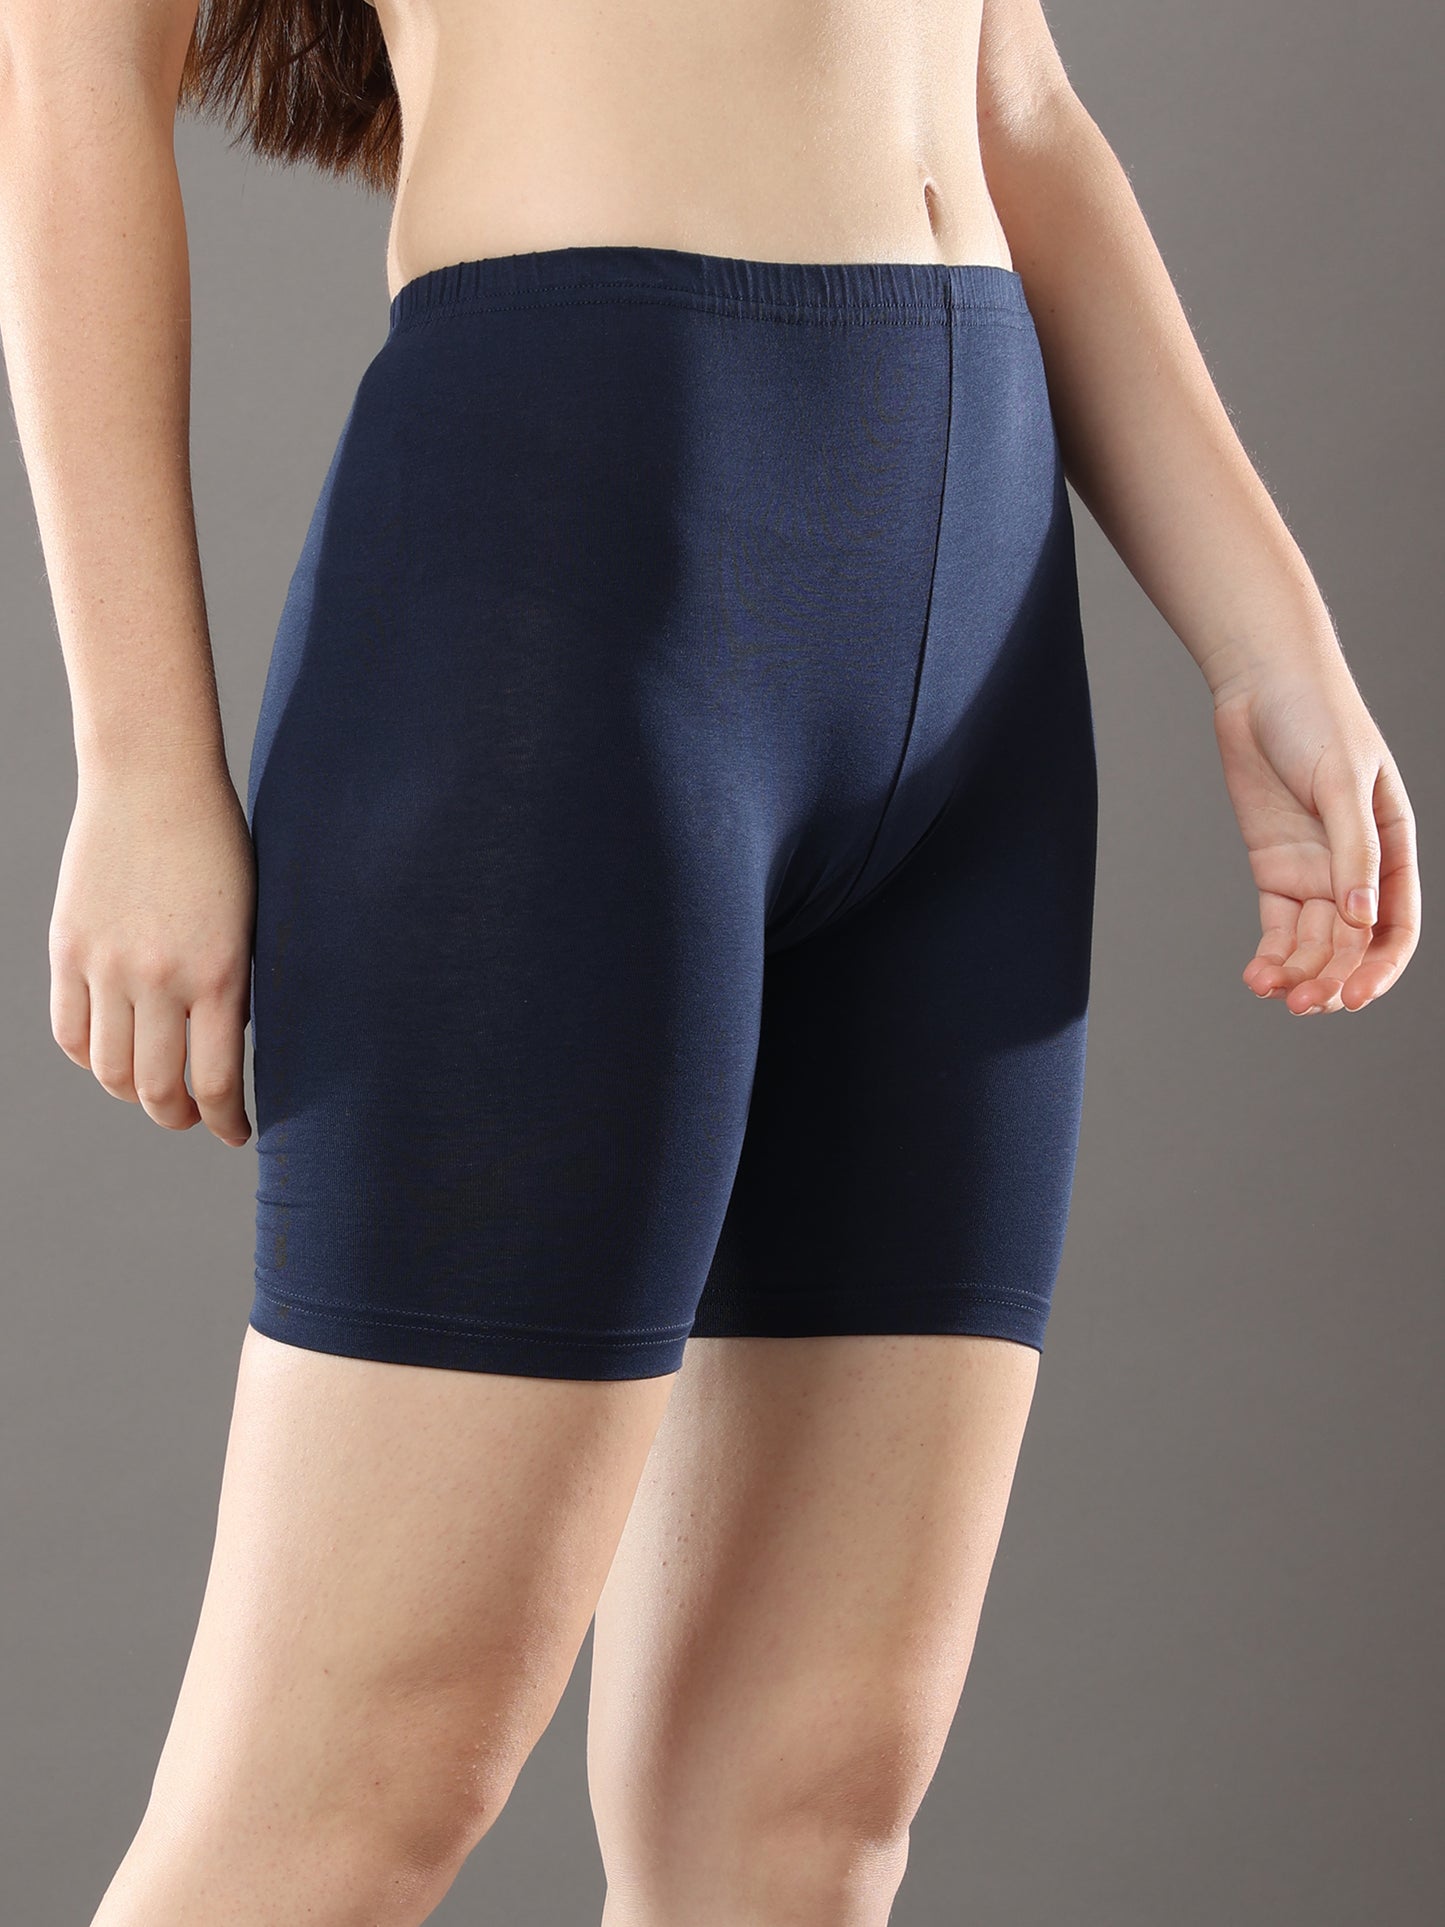 Navy Blue Womens Strech Shorts